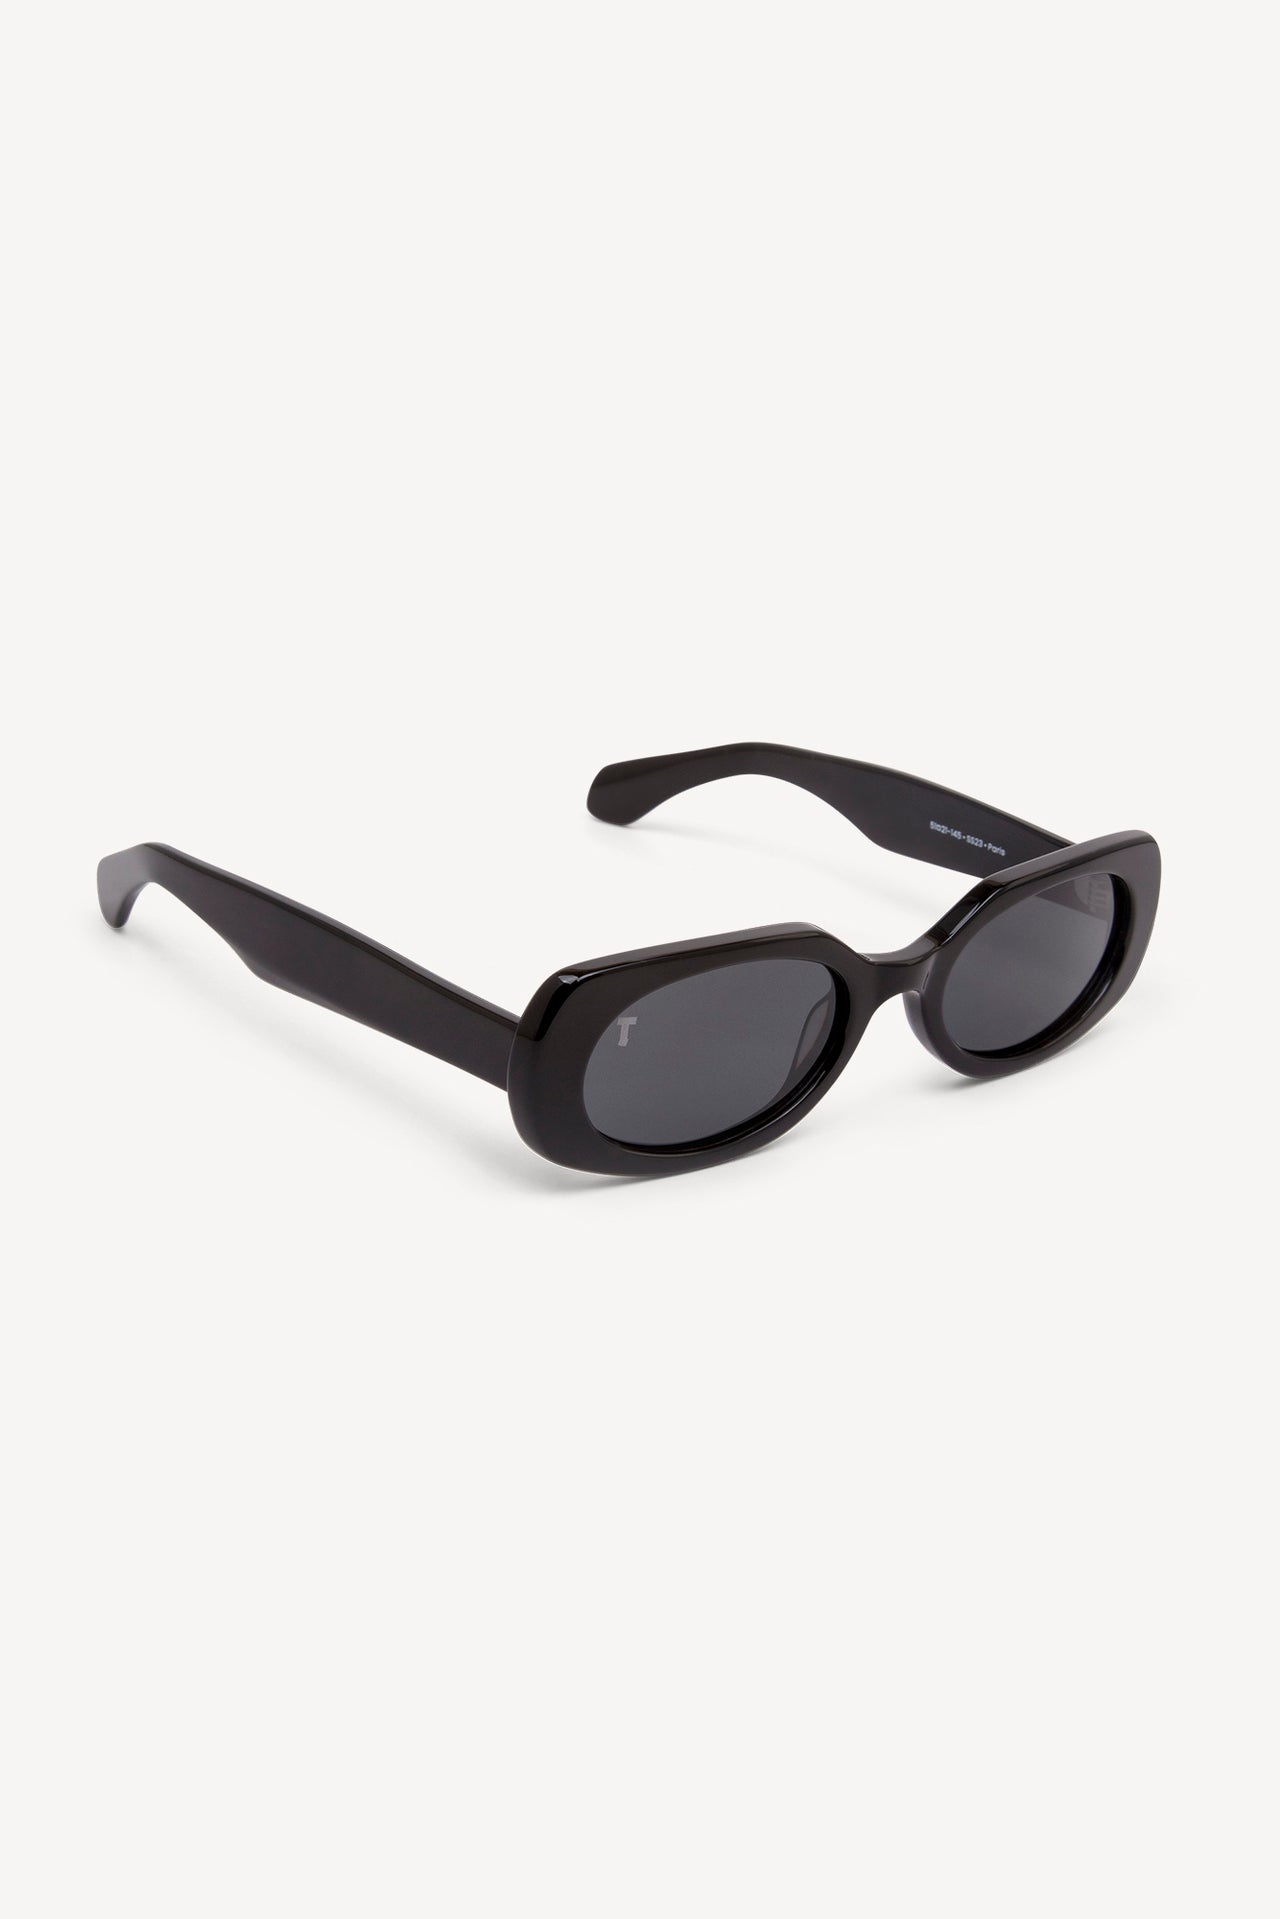 TOATIE Paris Rectangular Sunglasses BLACK/BLACK